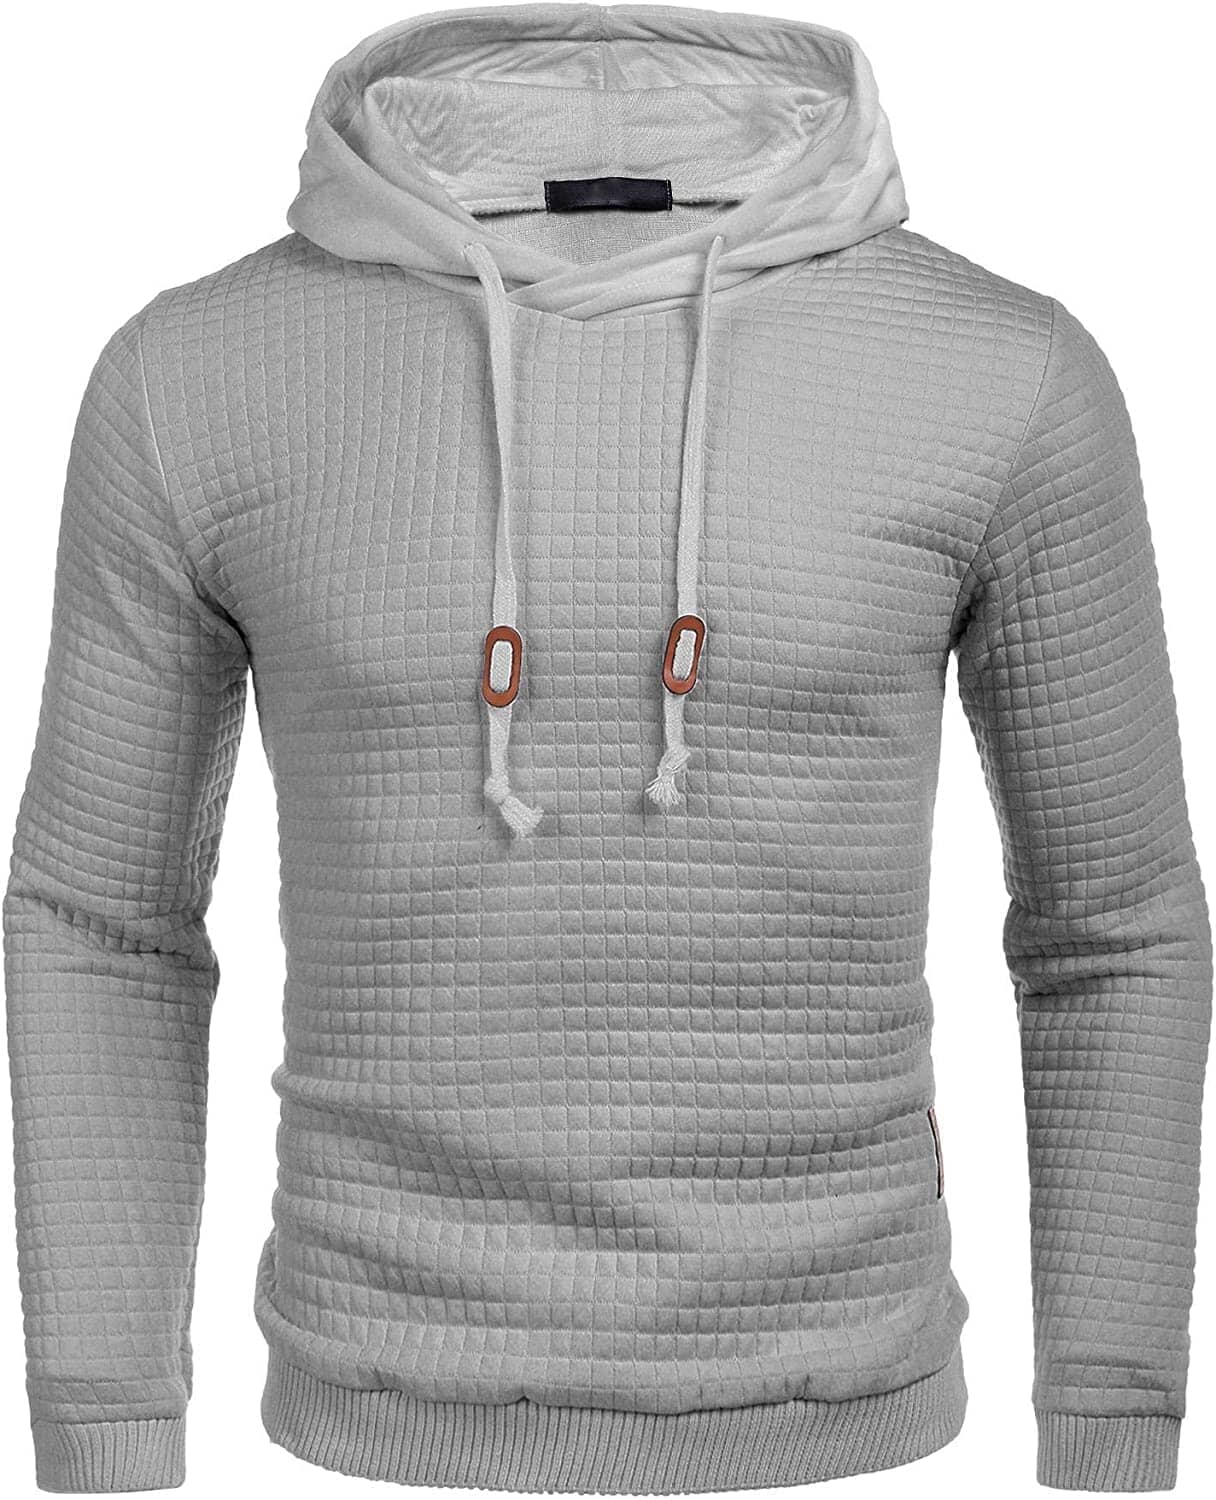 Gym Drawstring Plaid Jacquard Hoodie (US Only) Fashion Hoodies & Sweatshirts COOFANDY Store Grey S 